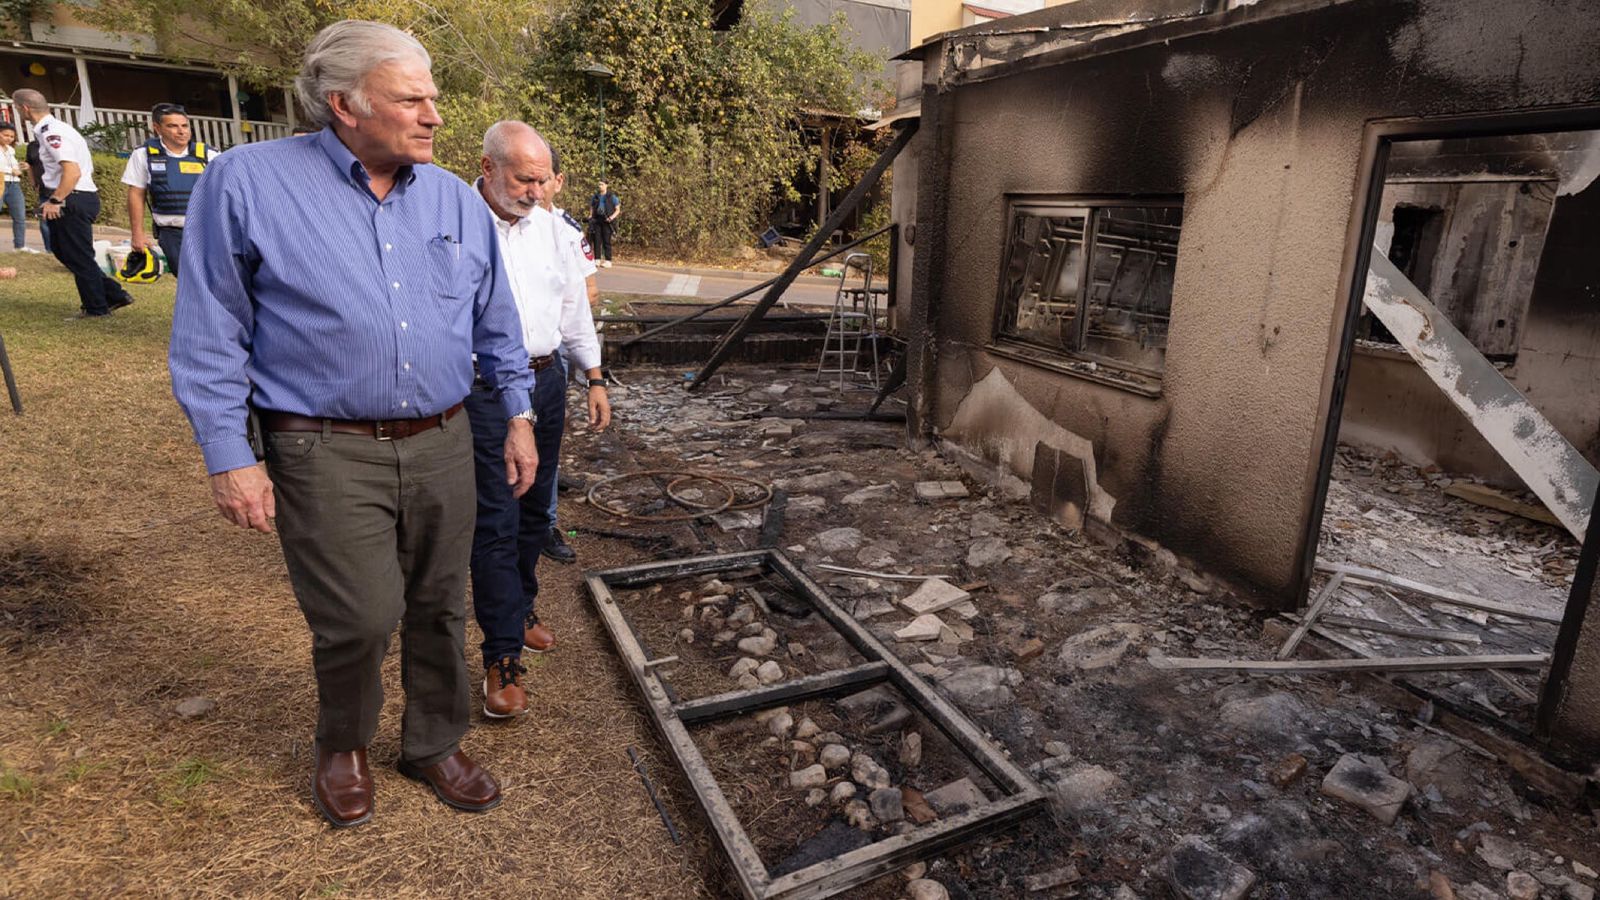 “É demoníaco o que aconteceu aqui”, diz Franklin Graham em missão a Israel